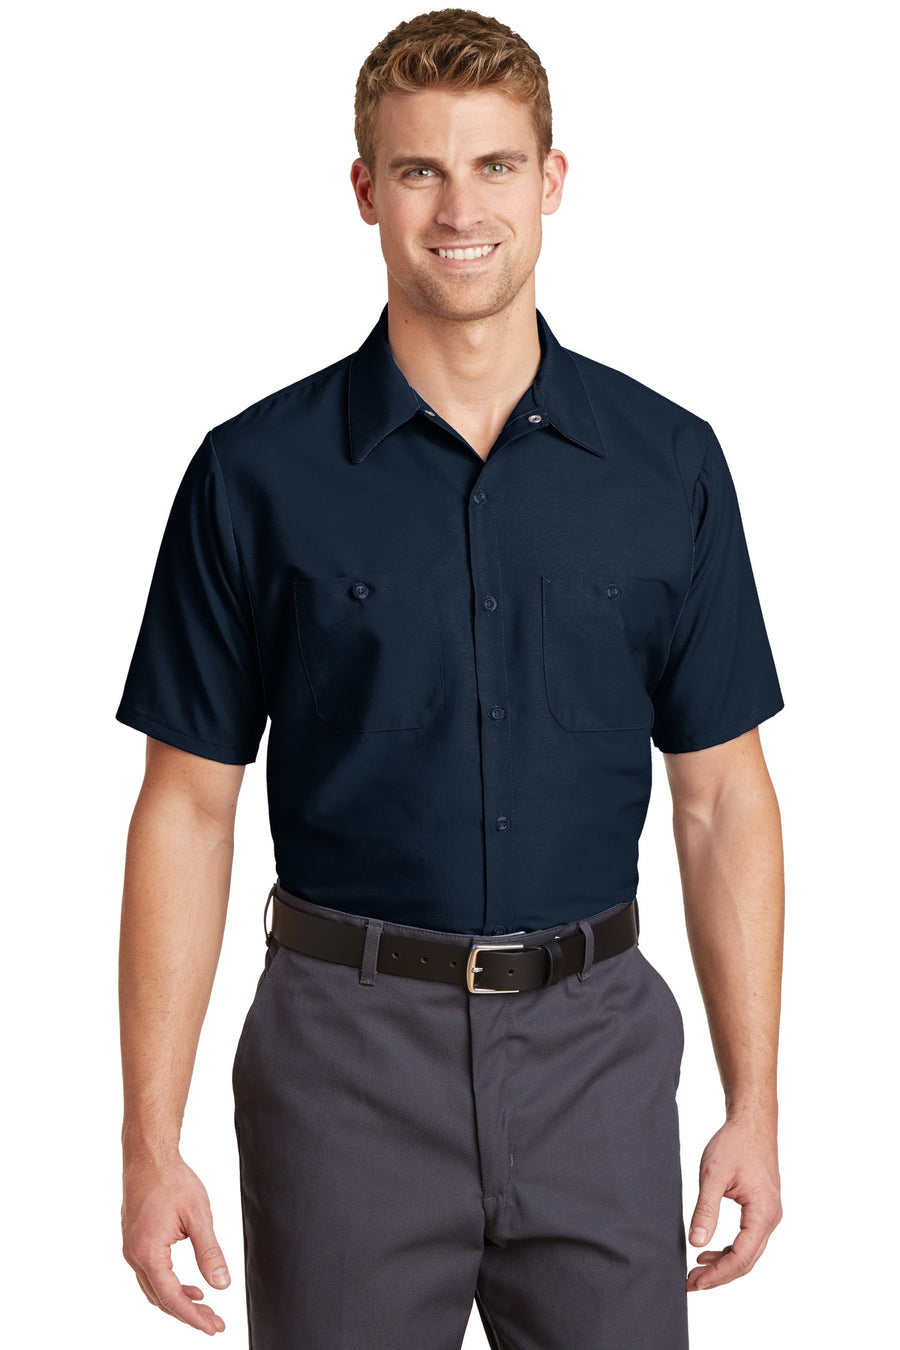 Red Kap Long Size Short Sleeve Industrial Work Shirt.